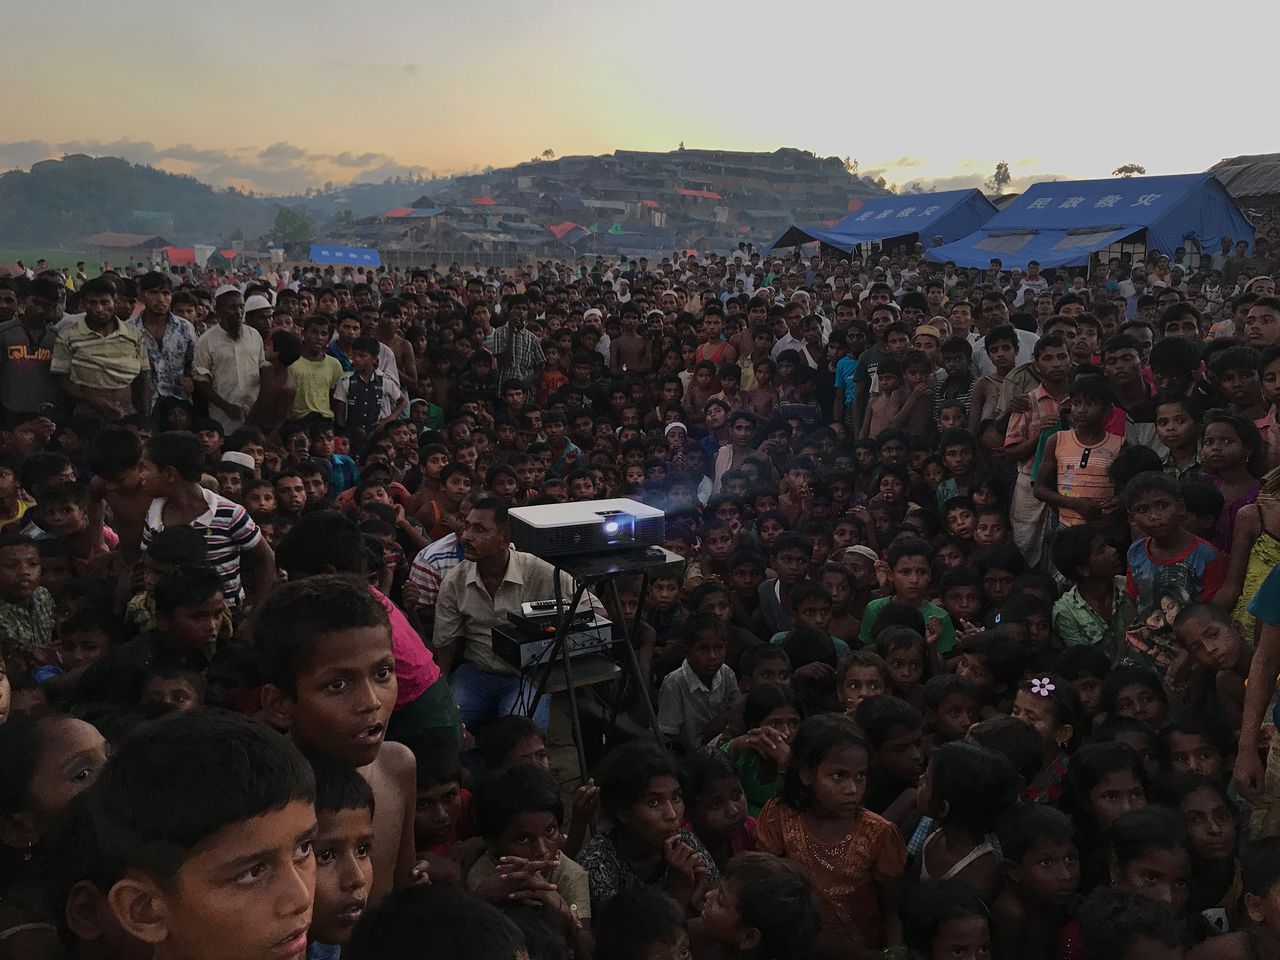 Tegorocznym zdobywcą tytułu Fotografa Roku w konkursie iPhone Photography Awards został Jashim Salam - fotograf dokumentalny z Bangladeszu. Zwycięskie zdjęcie przedstawia dzieci z ludu Rohingja, oglądające film o  zdrowiu i higienie w pobliżu obozu dla uchodźców. Fotograf wykonał je iPhonem 7.